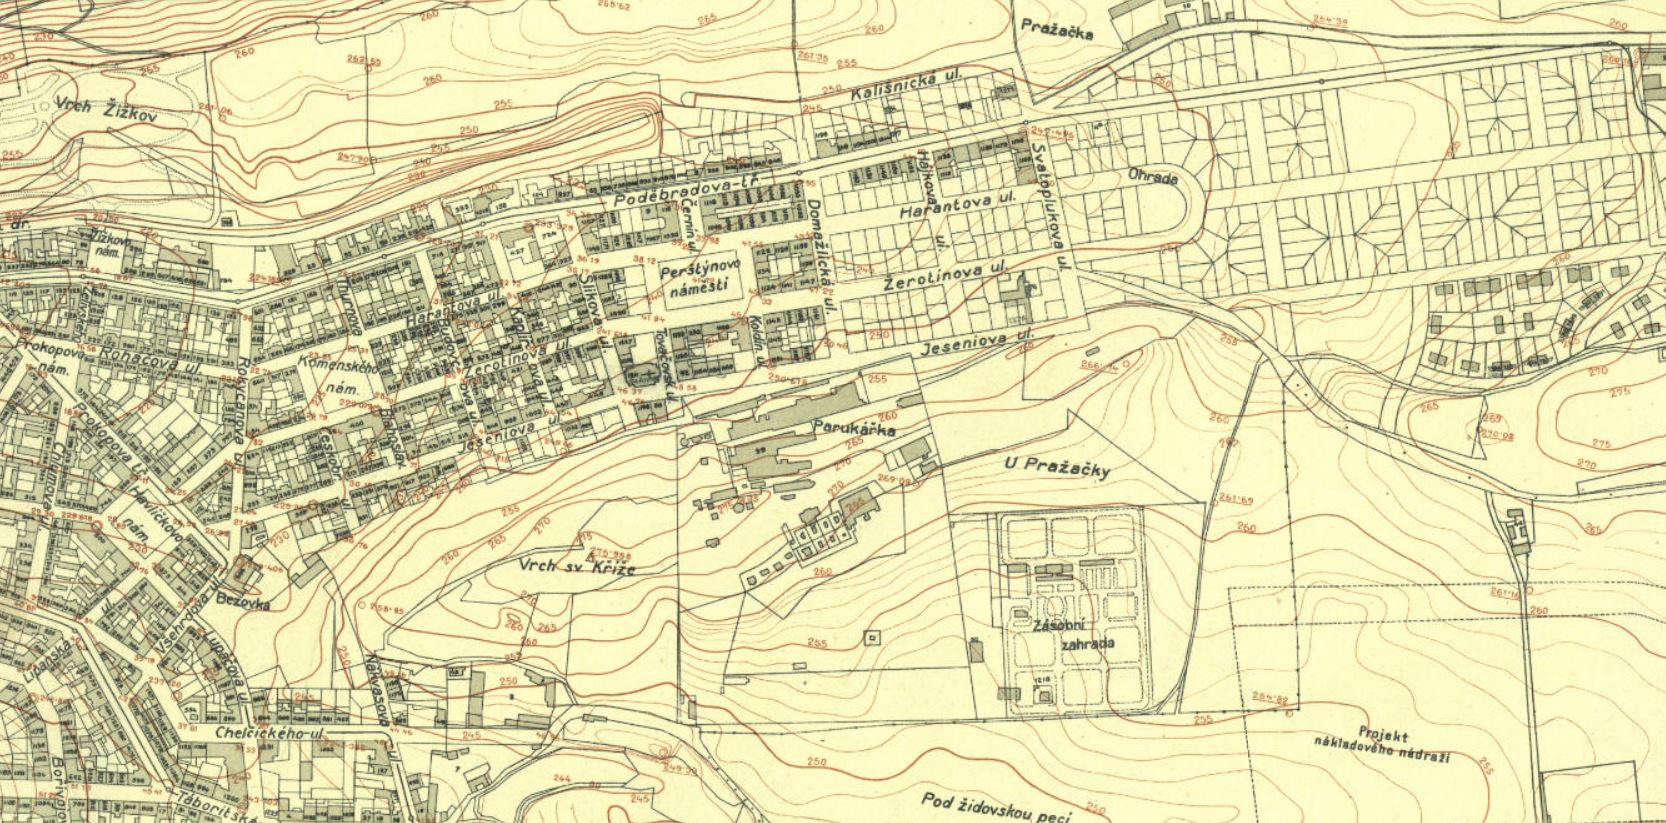 Mapa okolí Červené skály z roku 1924 včetně plánované a následně nerealizované výstavby